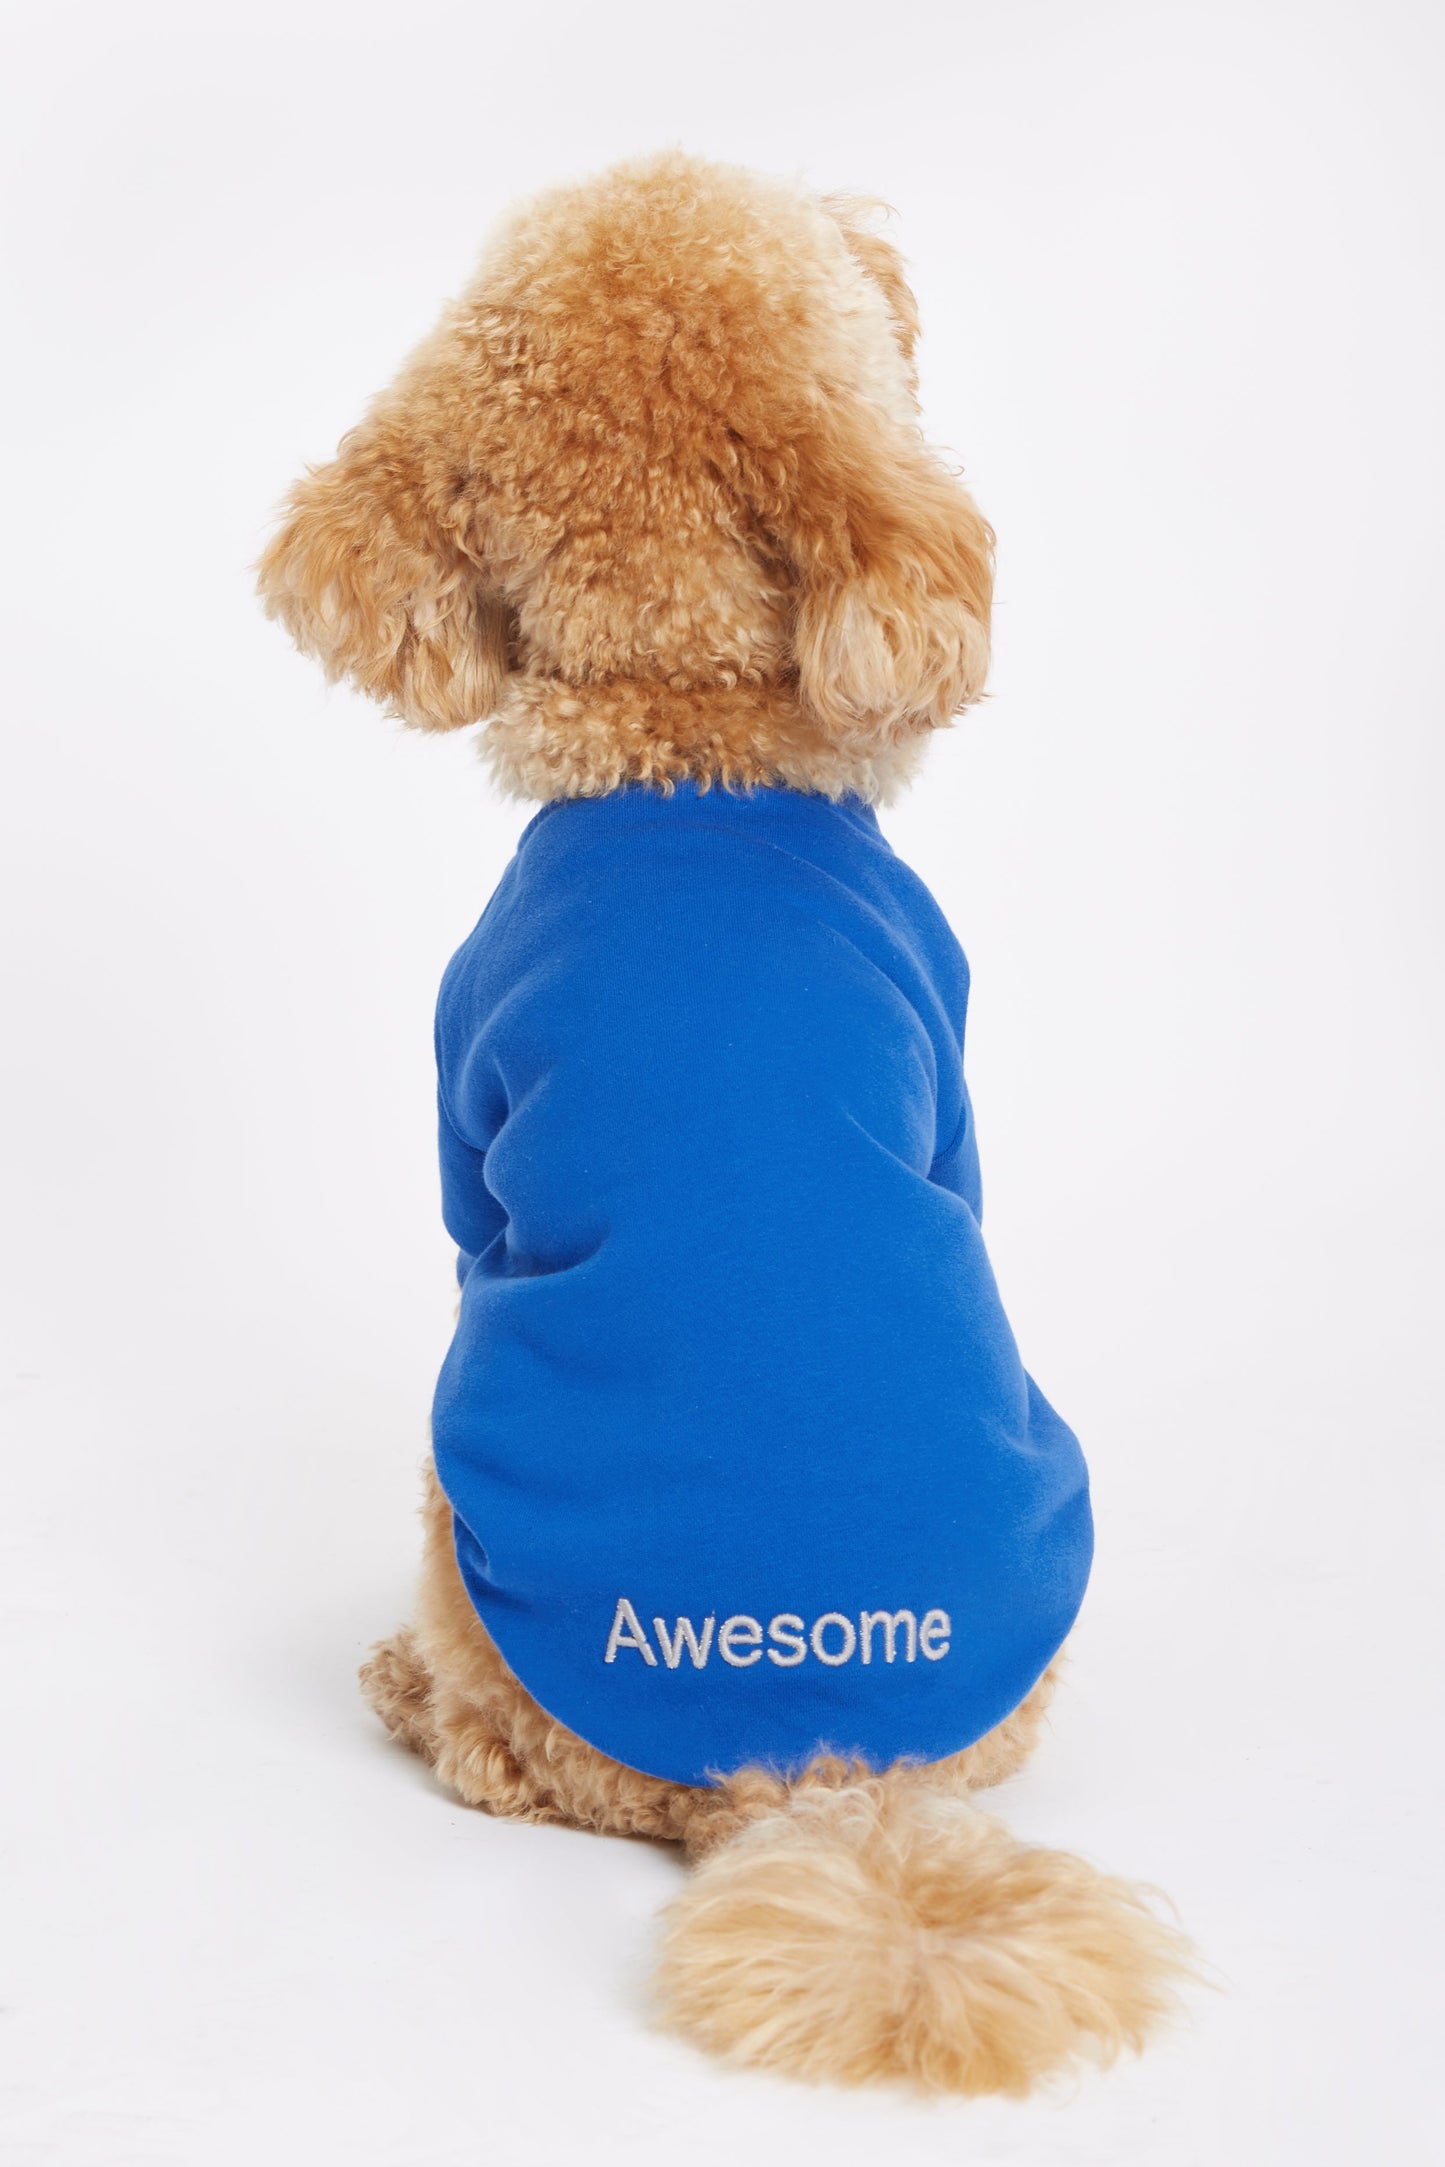 
                  
                    Mavi Köpek Sweatshirt - "Awesome" Sloganlı
                  
                